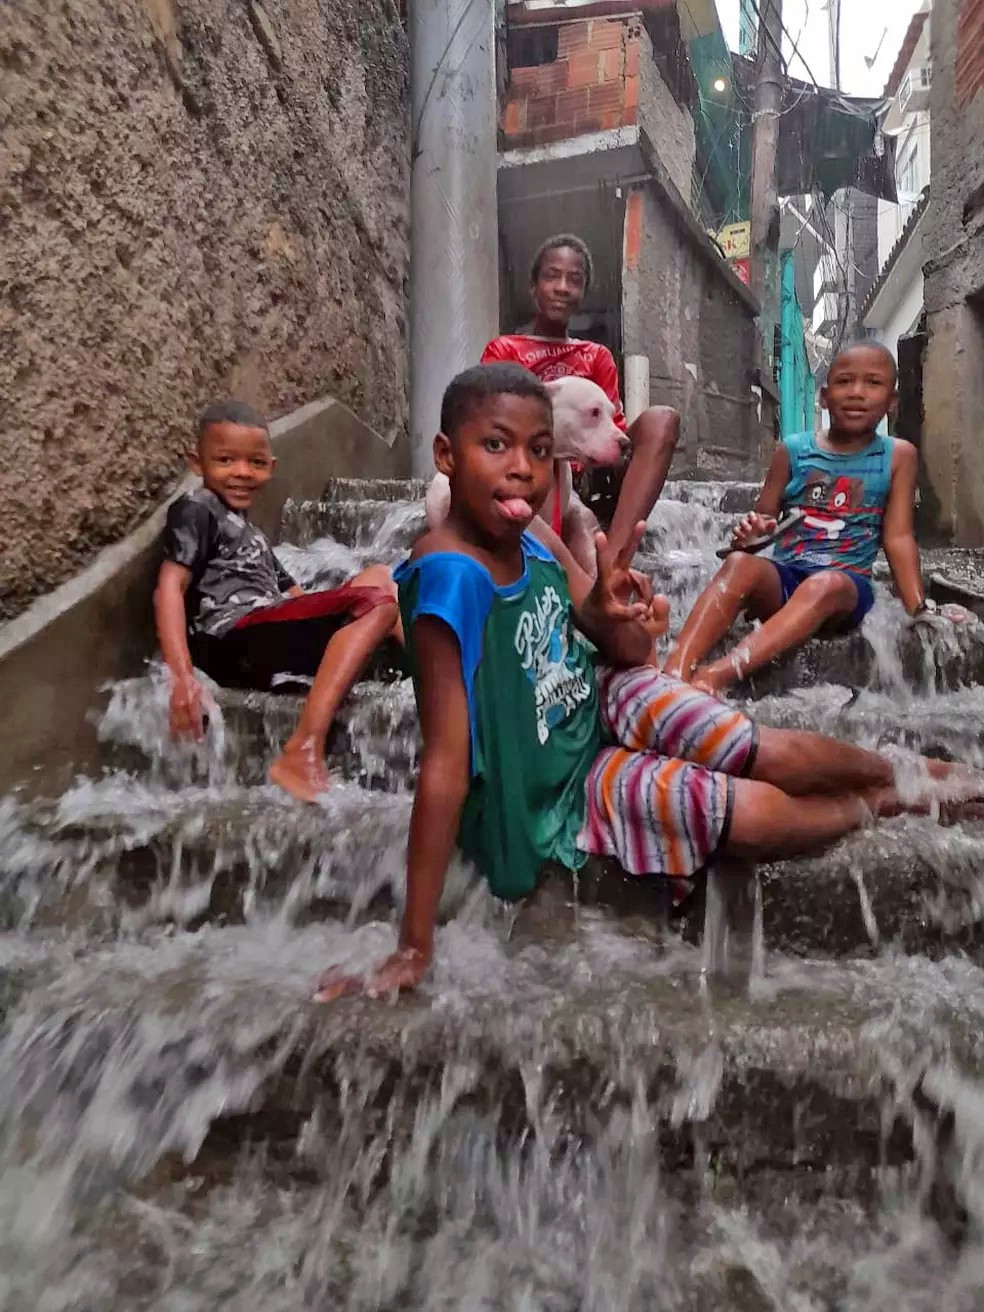 agrandeartedeserfeliz.com - Foto de crianças na chuva e cãozinho sorrindo em comunidade do Rio viraliza: 'Todo mundo feliz'